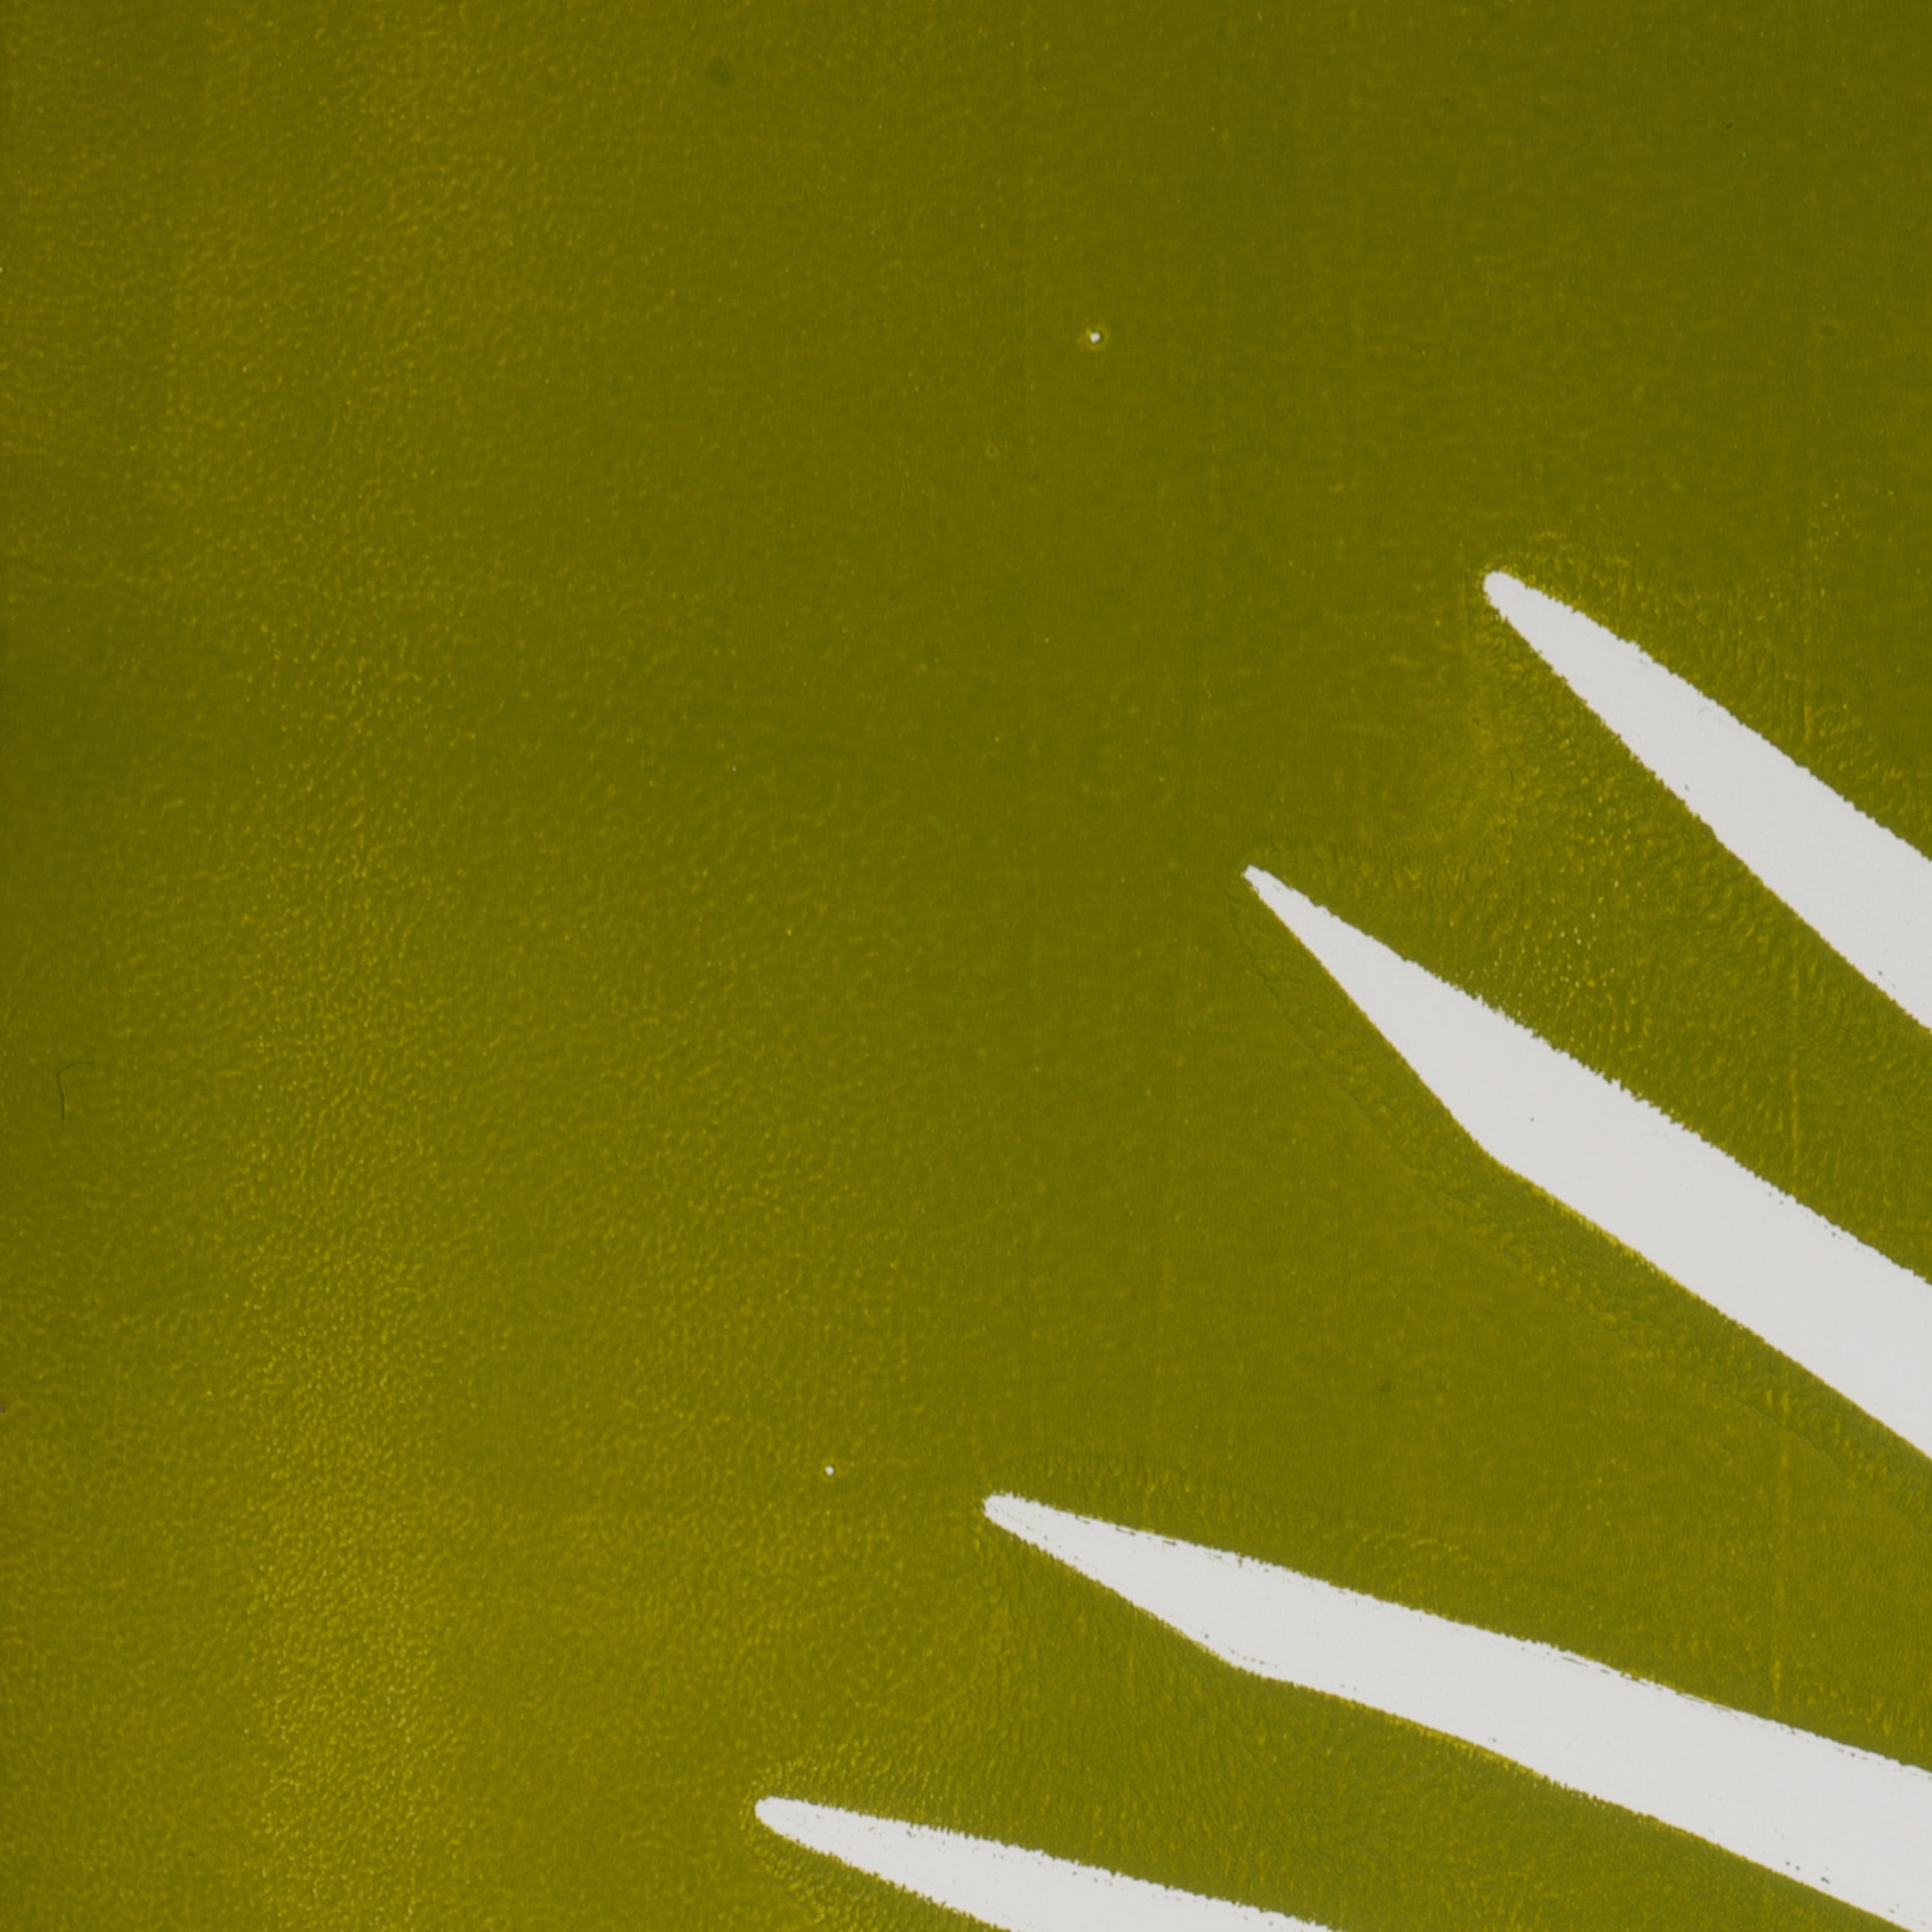 Green wall art in palm leaf shape | monoprint | Enkel Art Studio